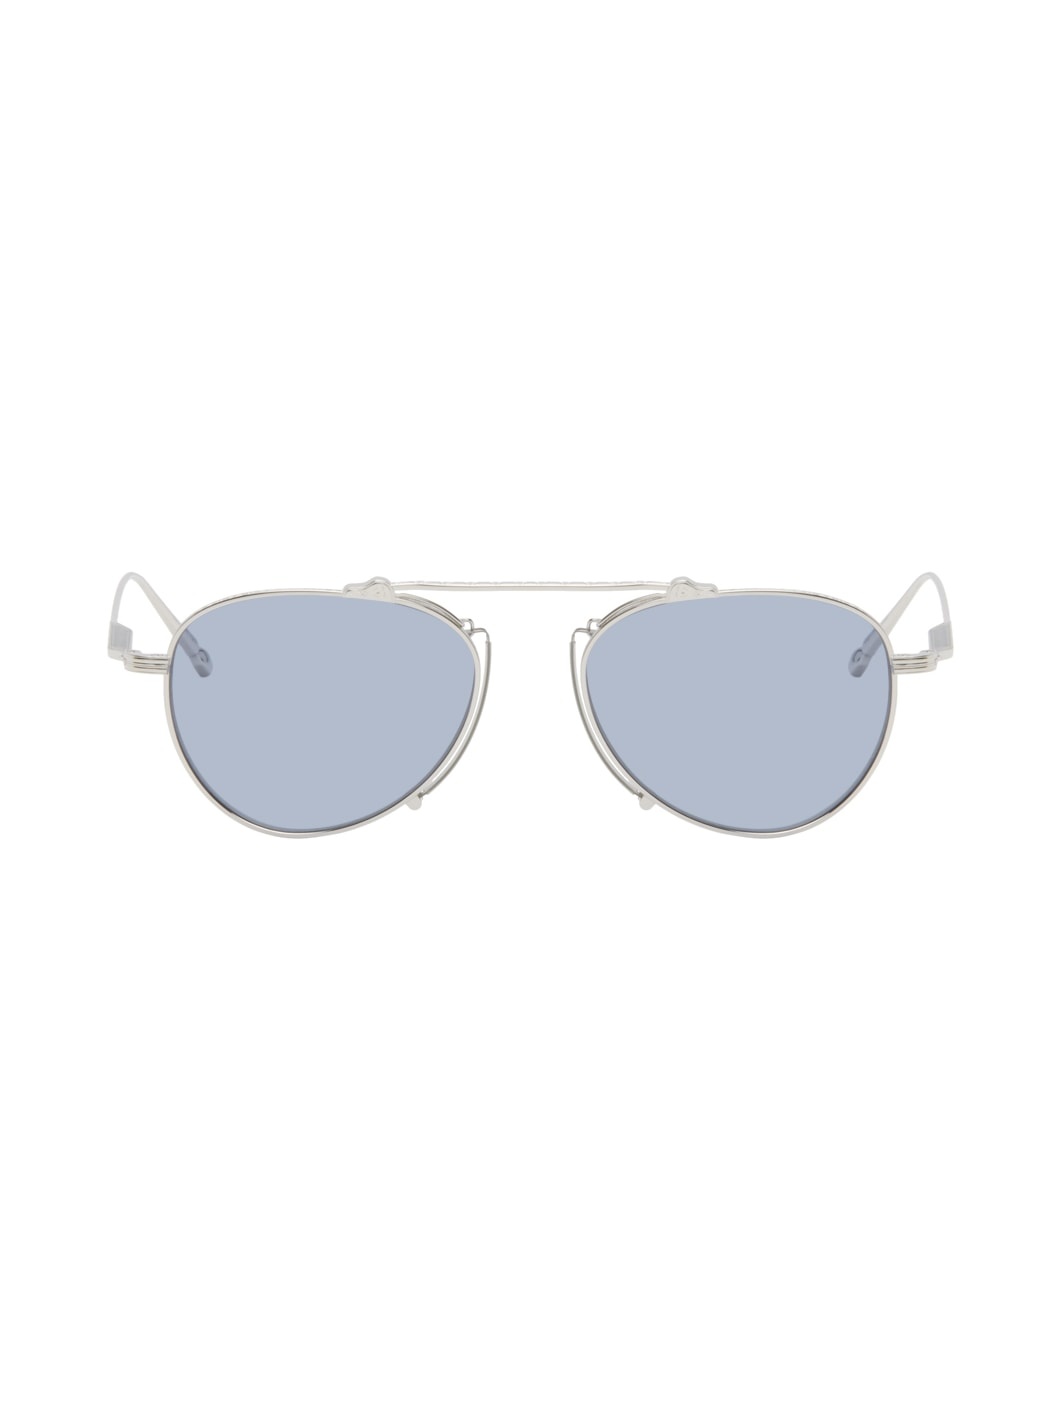 Silver M3130 Sunglasses - 1